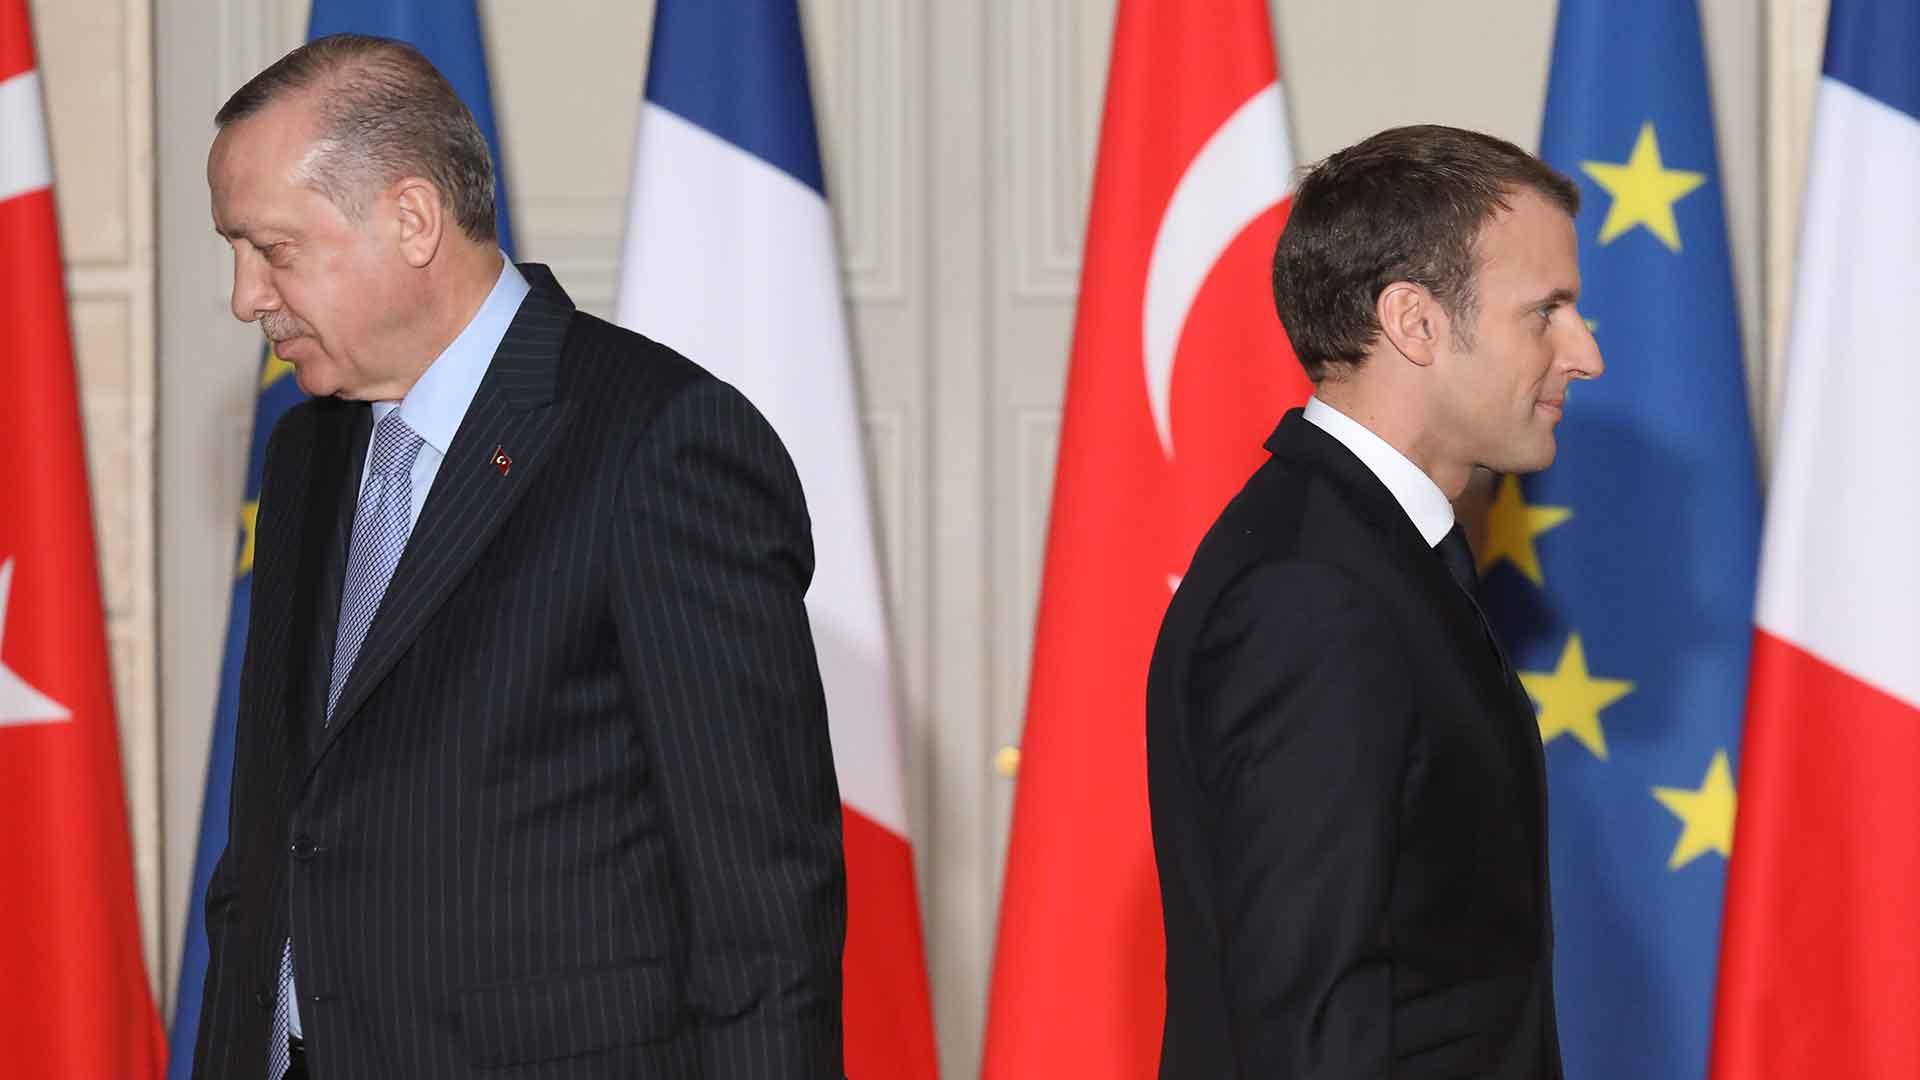 Macron descarta la integración de Turquía en la UE y propone más cooperación